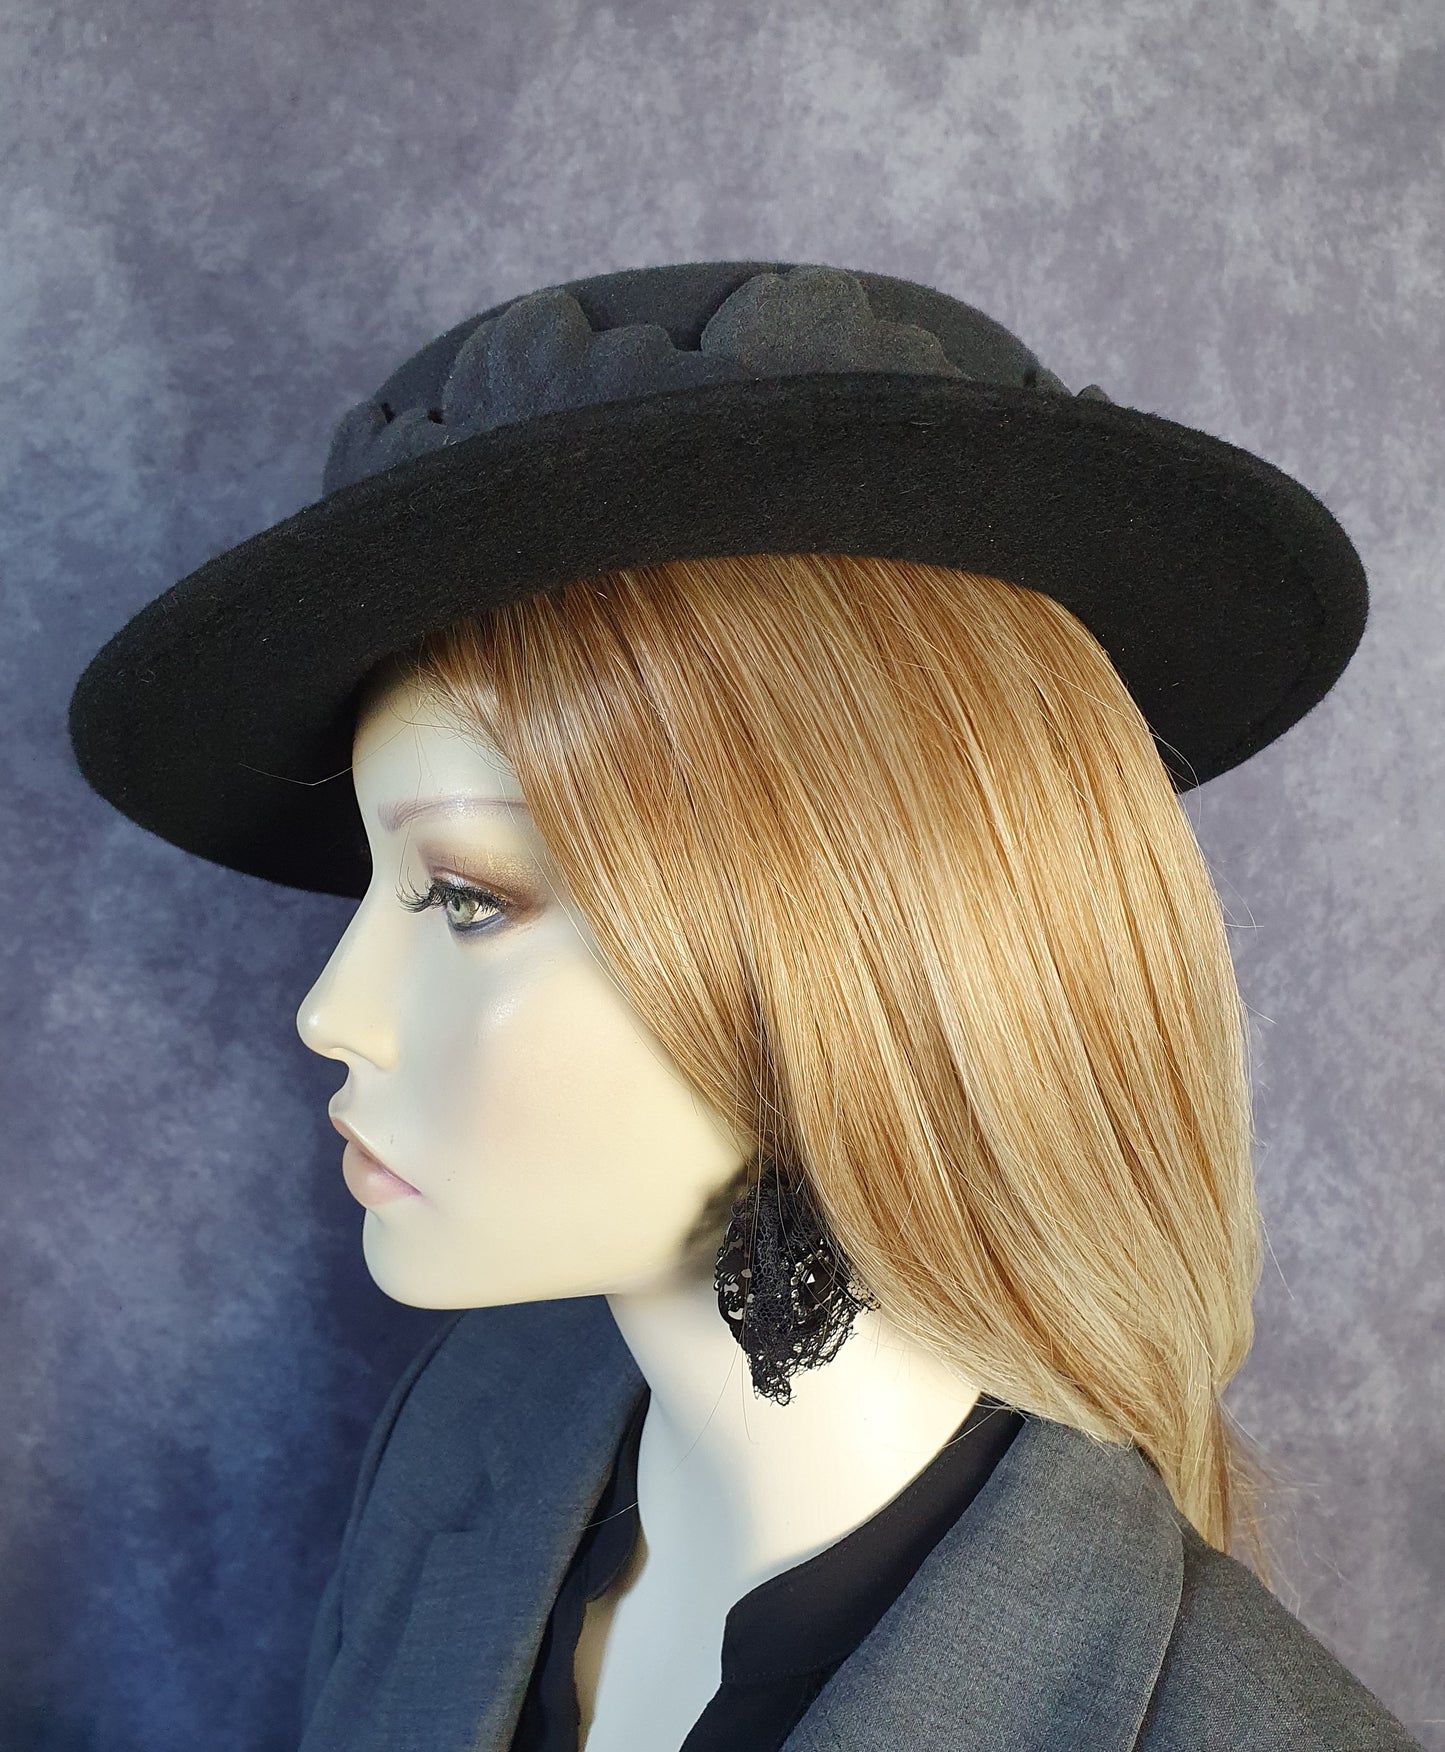 Sombrero de fieltro negro gris hecho a mano con hojas de otoño, tocado elegante, sombrero de mujer, sombrero de invierno, perfecto para ocasiones especiales